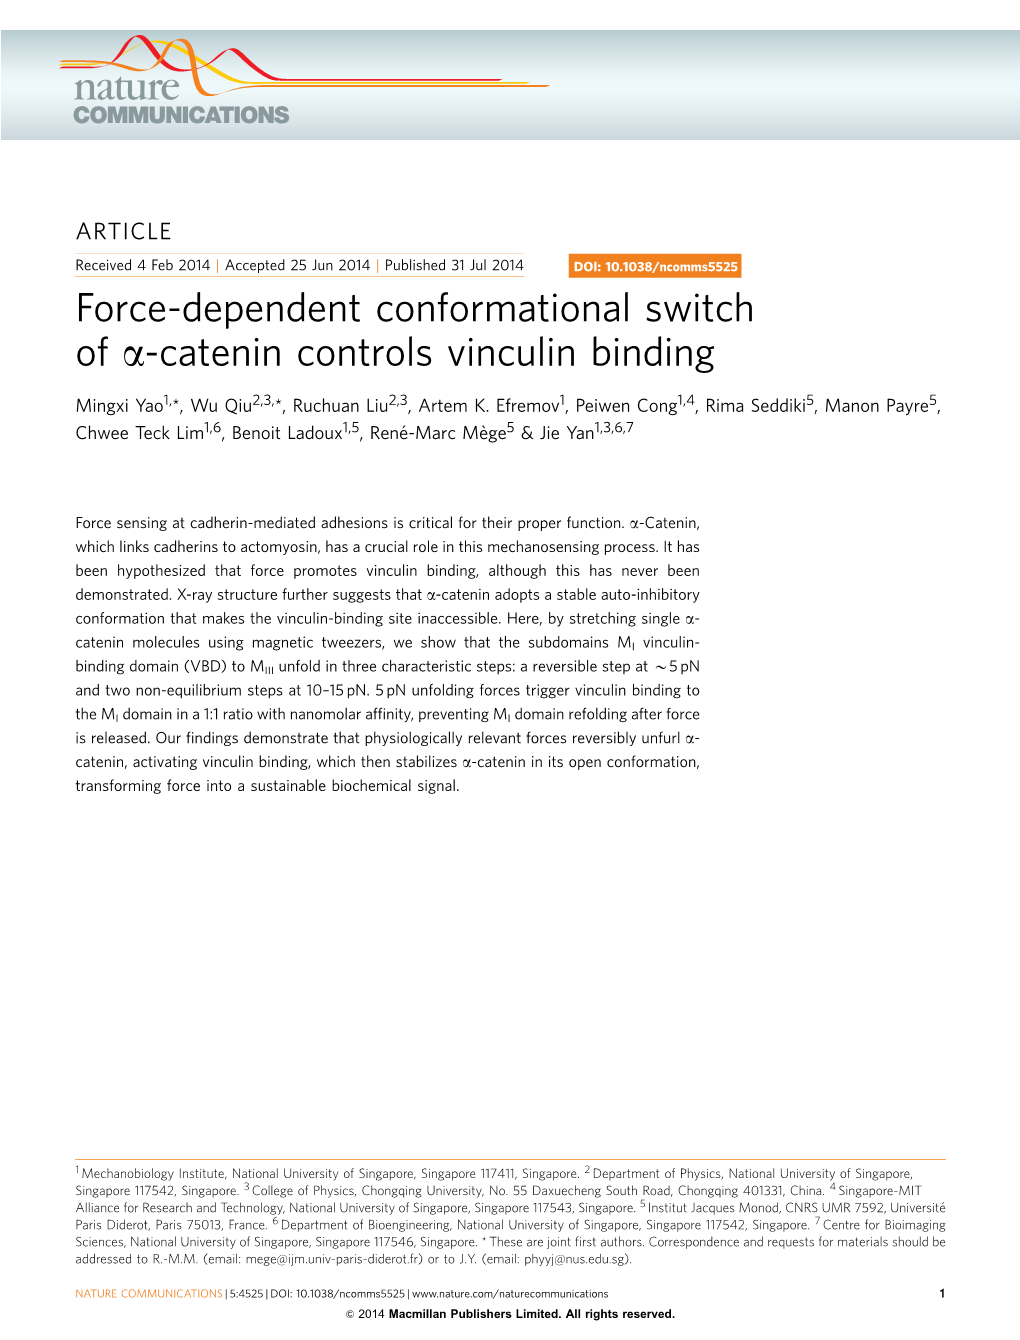 Catenin Controls Vinculin Binding